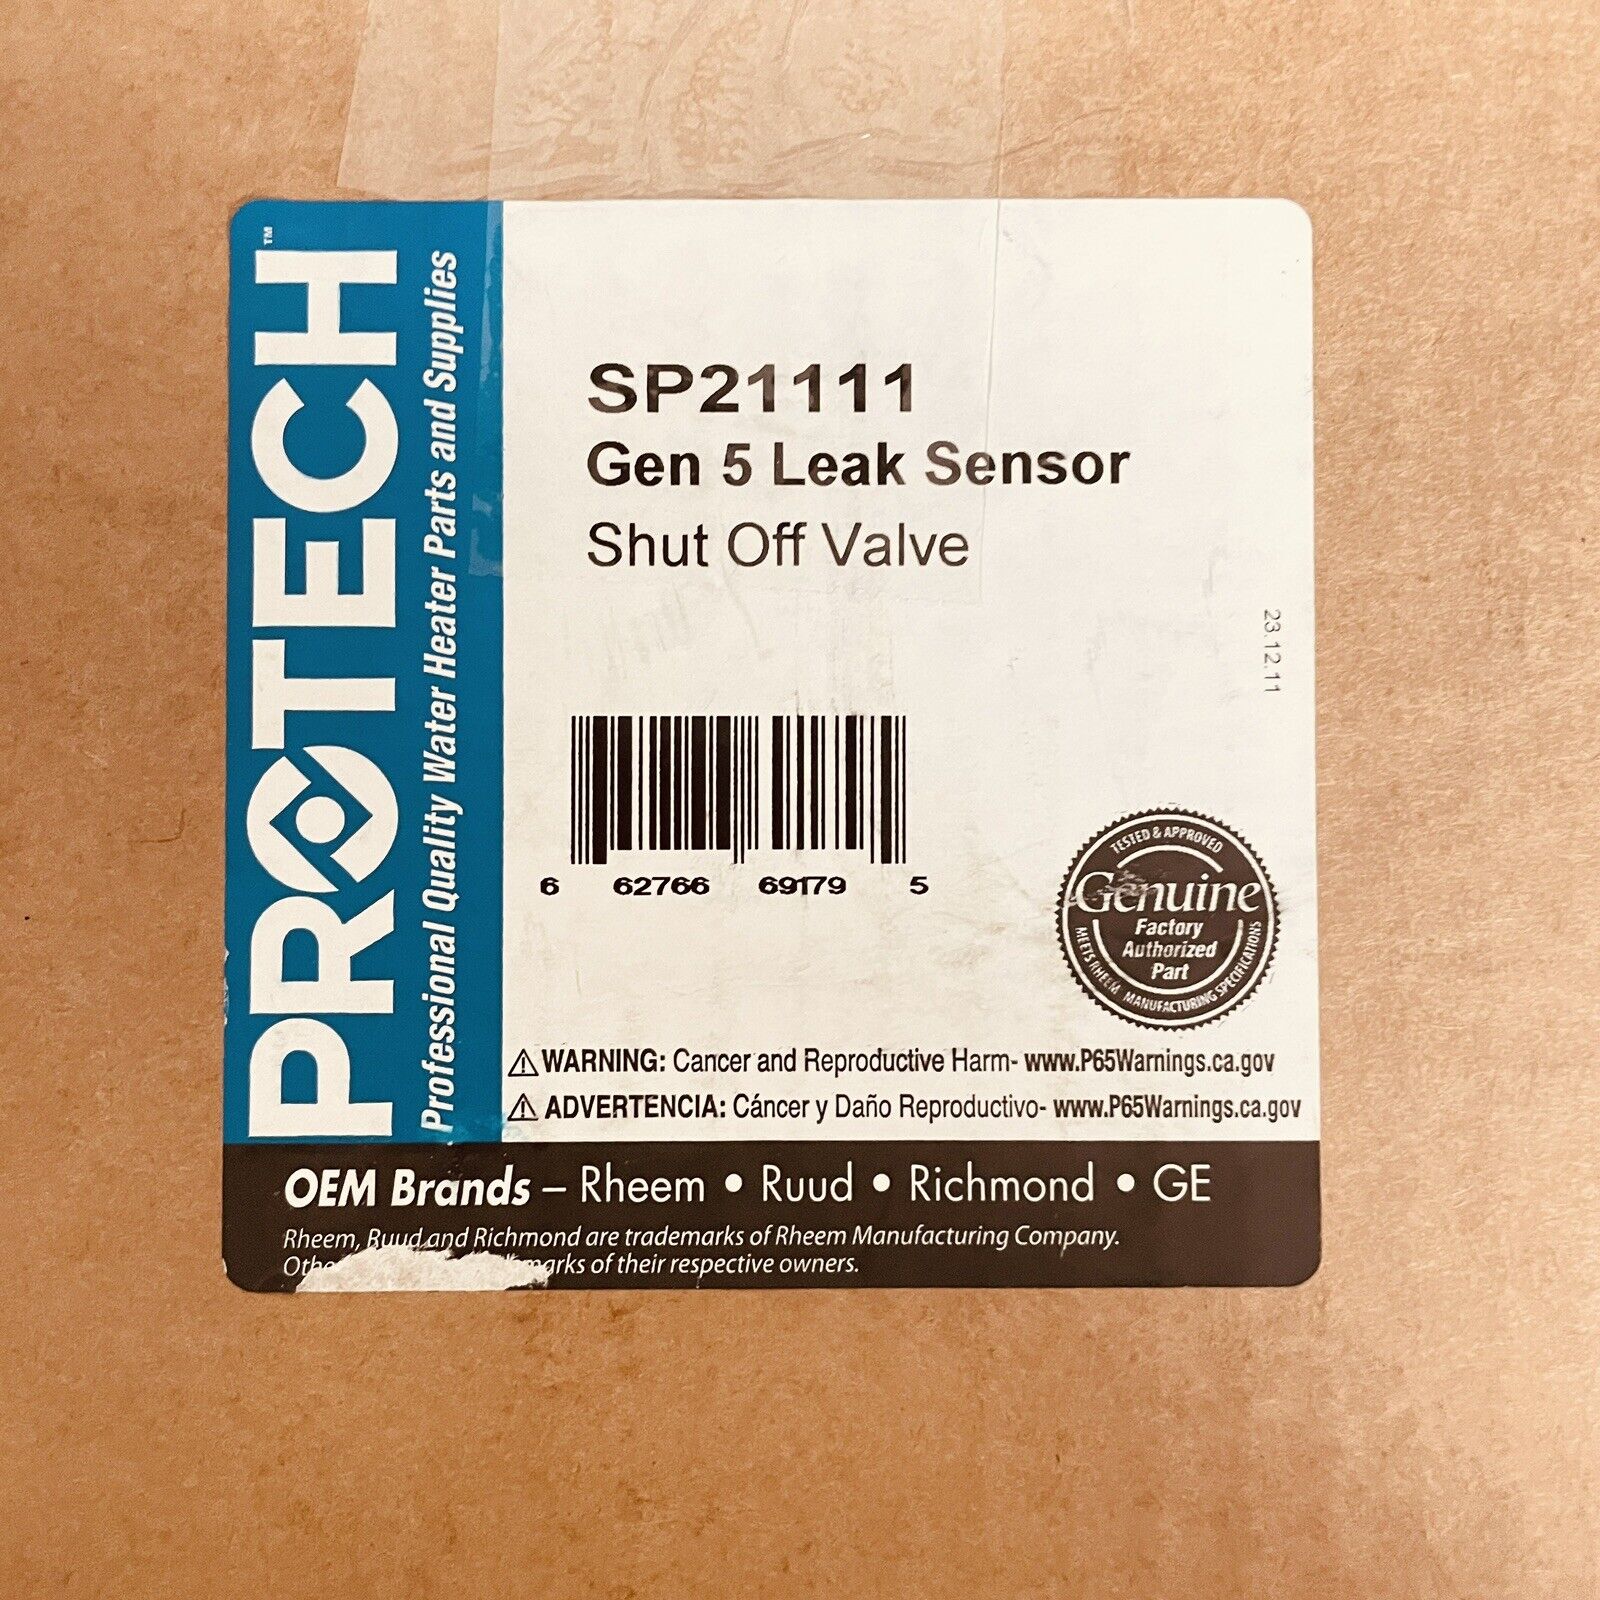 Rheem PROTECH Leak Sensor and Shut-Off Valve Kit for Rheem Hybrid Water Heaters